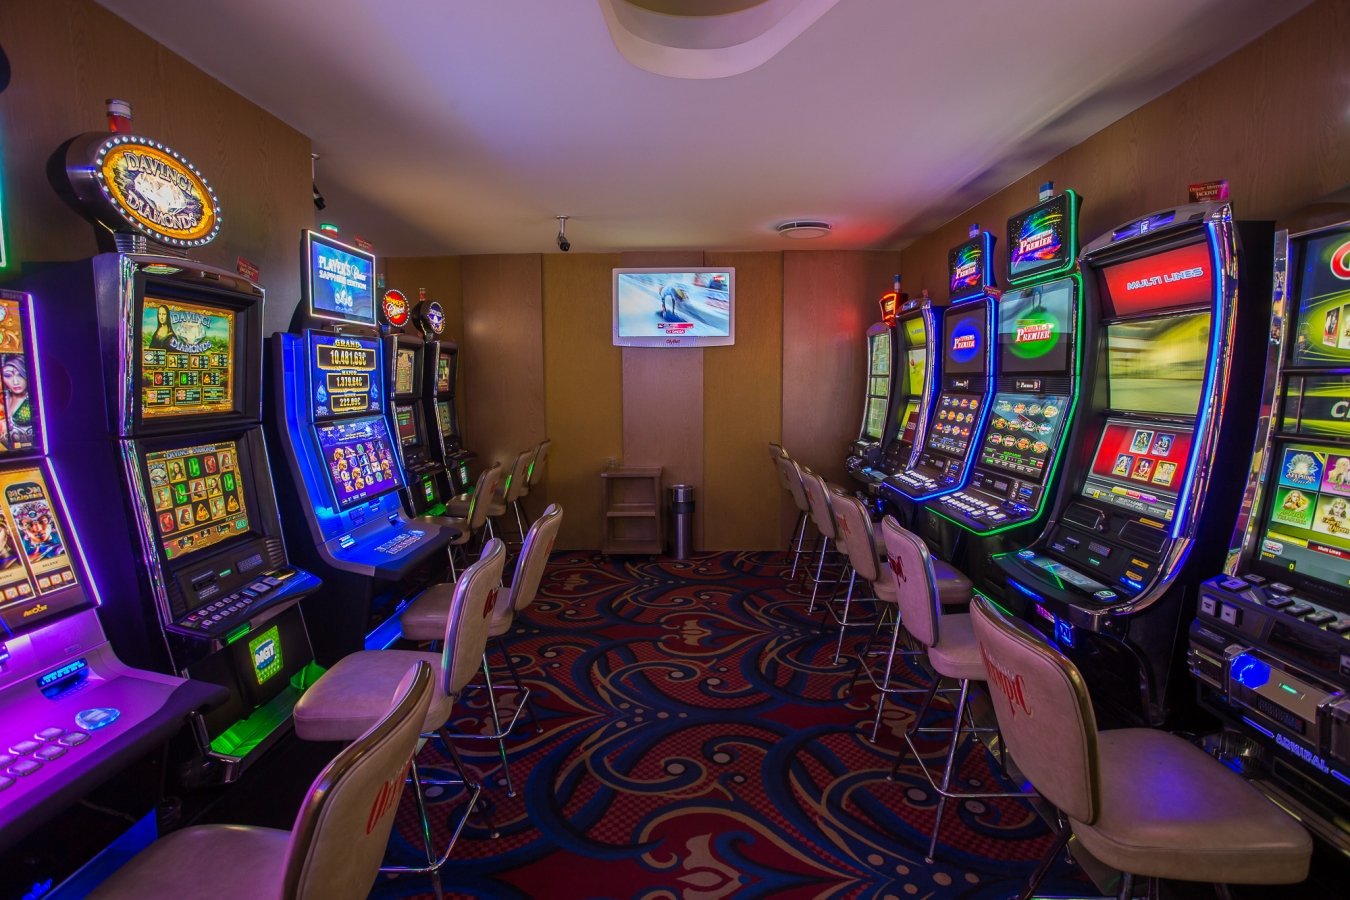 Игровой зал 777. Казино игровые автоматы IRMS/1488/59101. Зал игровых автоматов. Игровой зал казино. Помещения с игровыми автоматами.